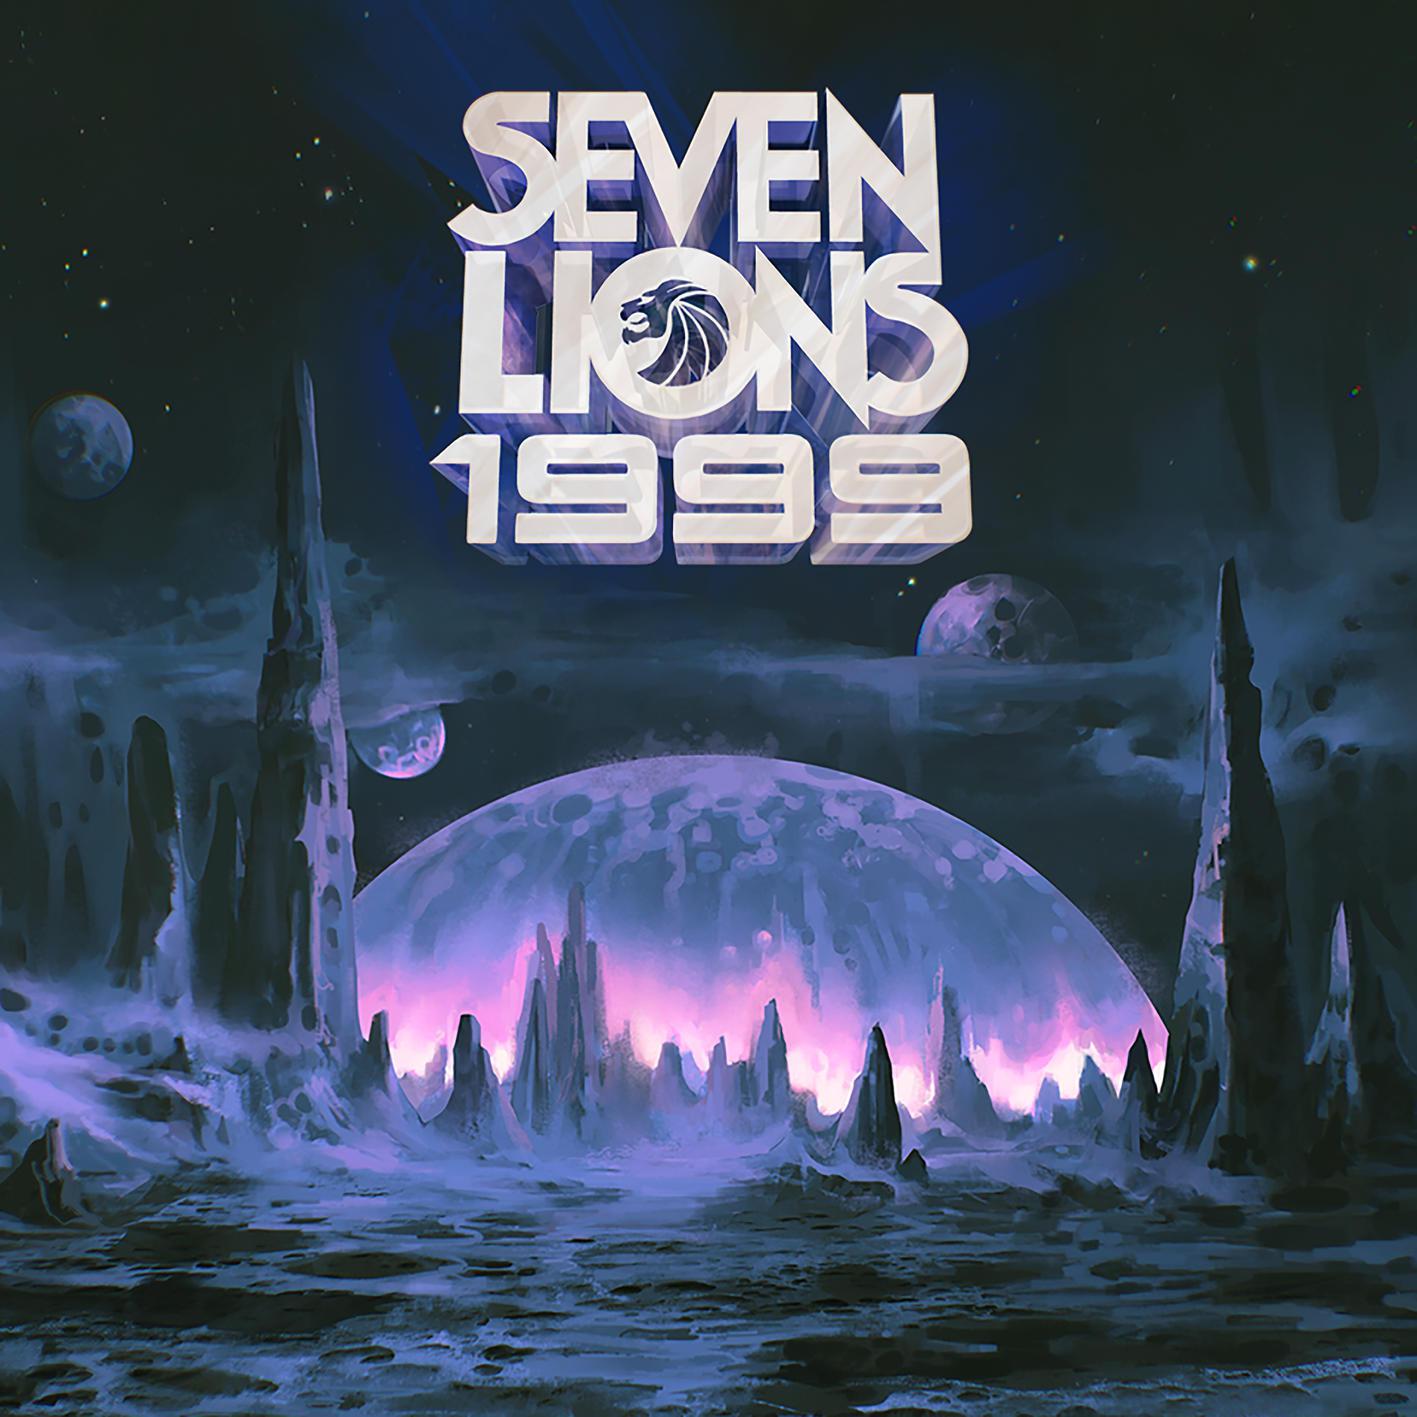 Seven Lions - Worlds Apart (Seven Lions 1999 Remix)